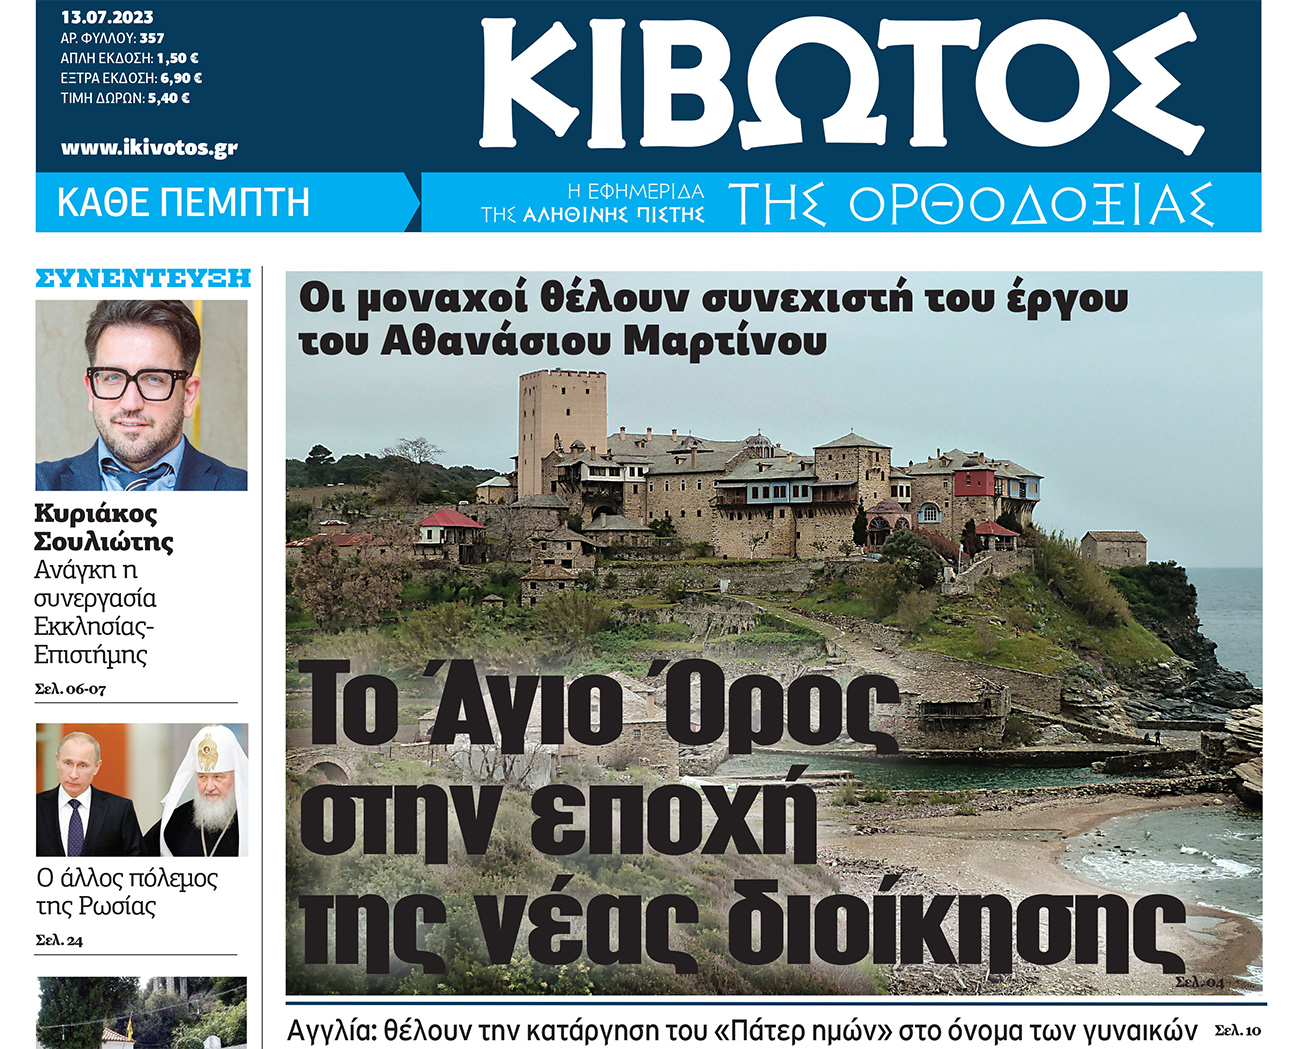 Την Πέμπτη, 13 Ιουλίου, κυκλοφορεί το νέο φύλλο της Εφημερίδας «Κιβωτός της Ορθοδοξίας»